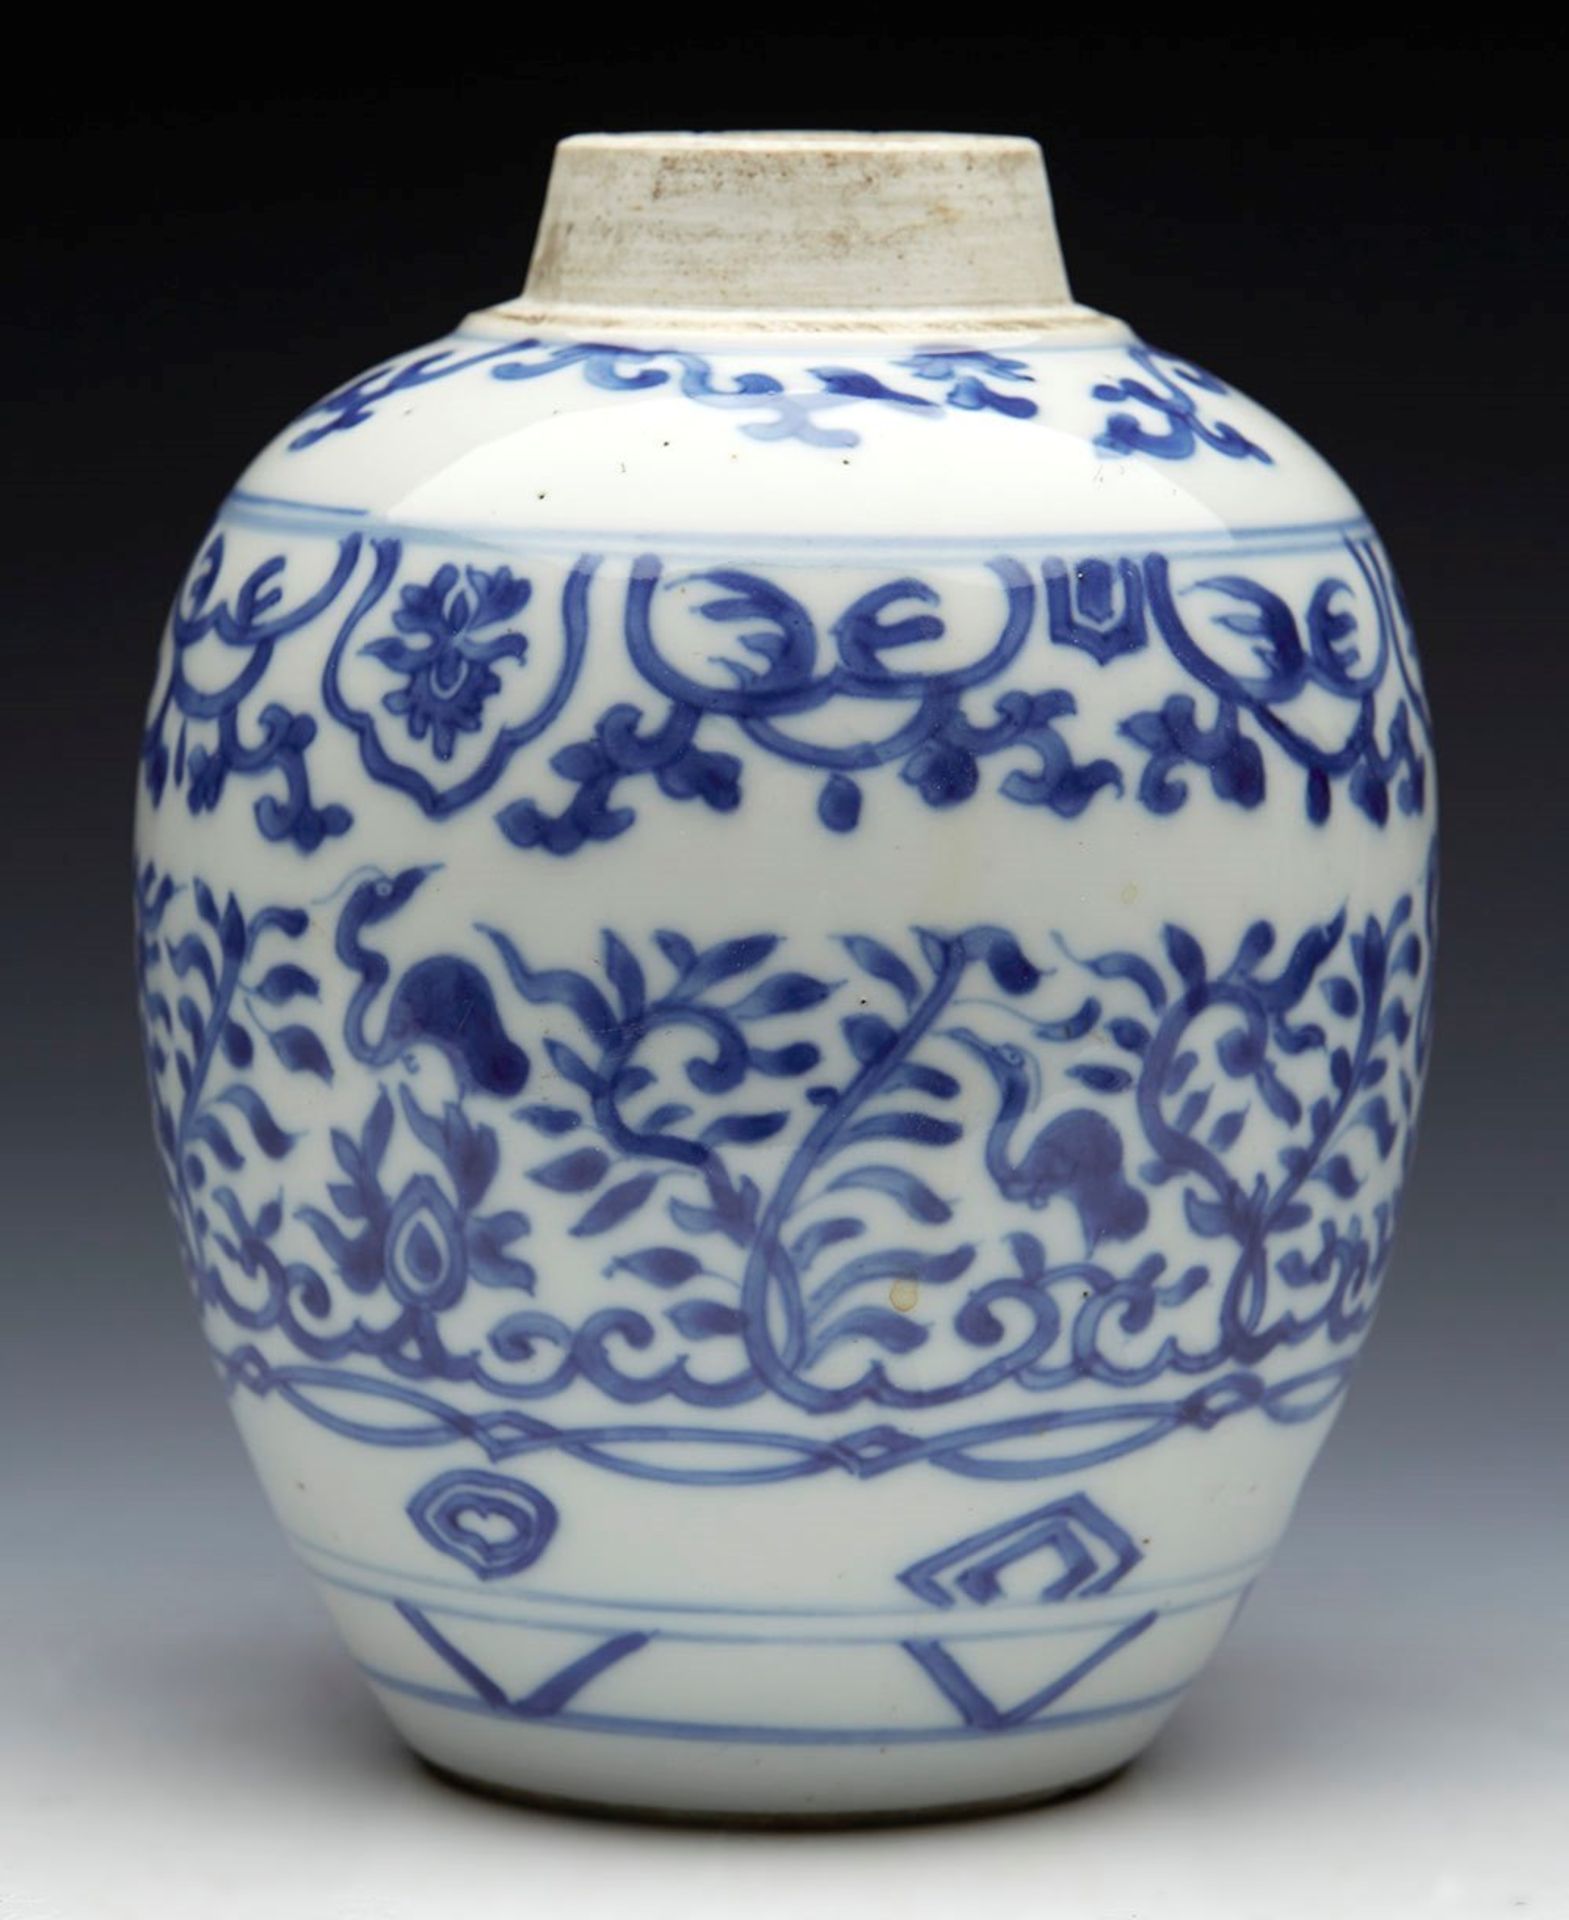 Antique Chinese Kangxi Jar 1662 - 1722 - Image 5 of 10